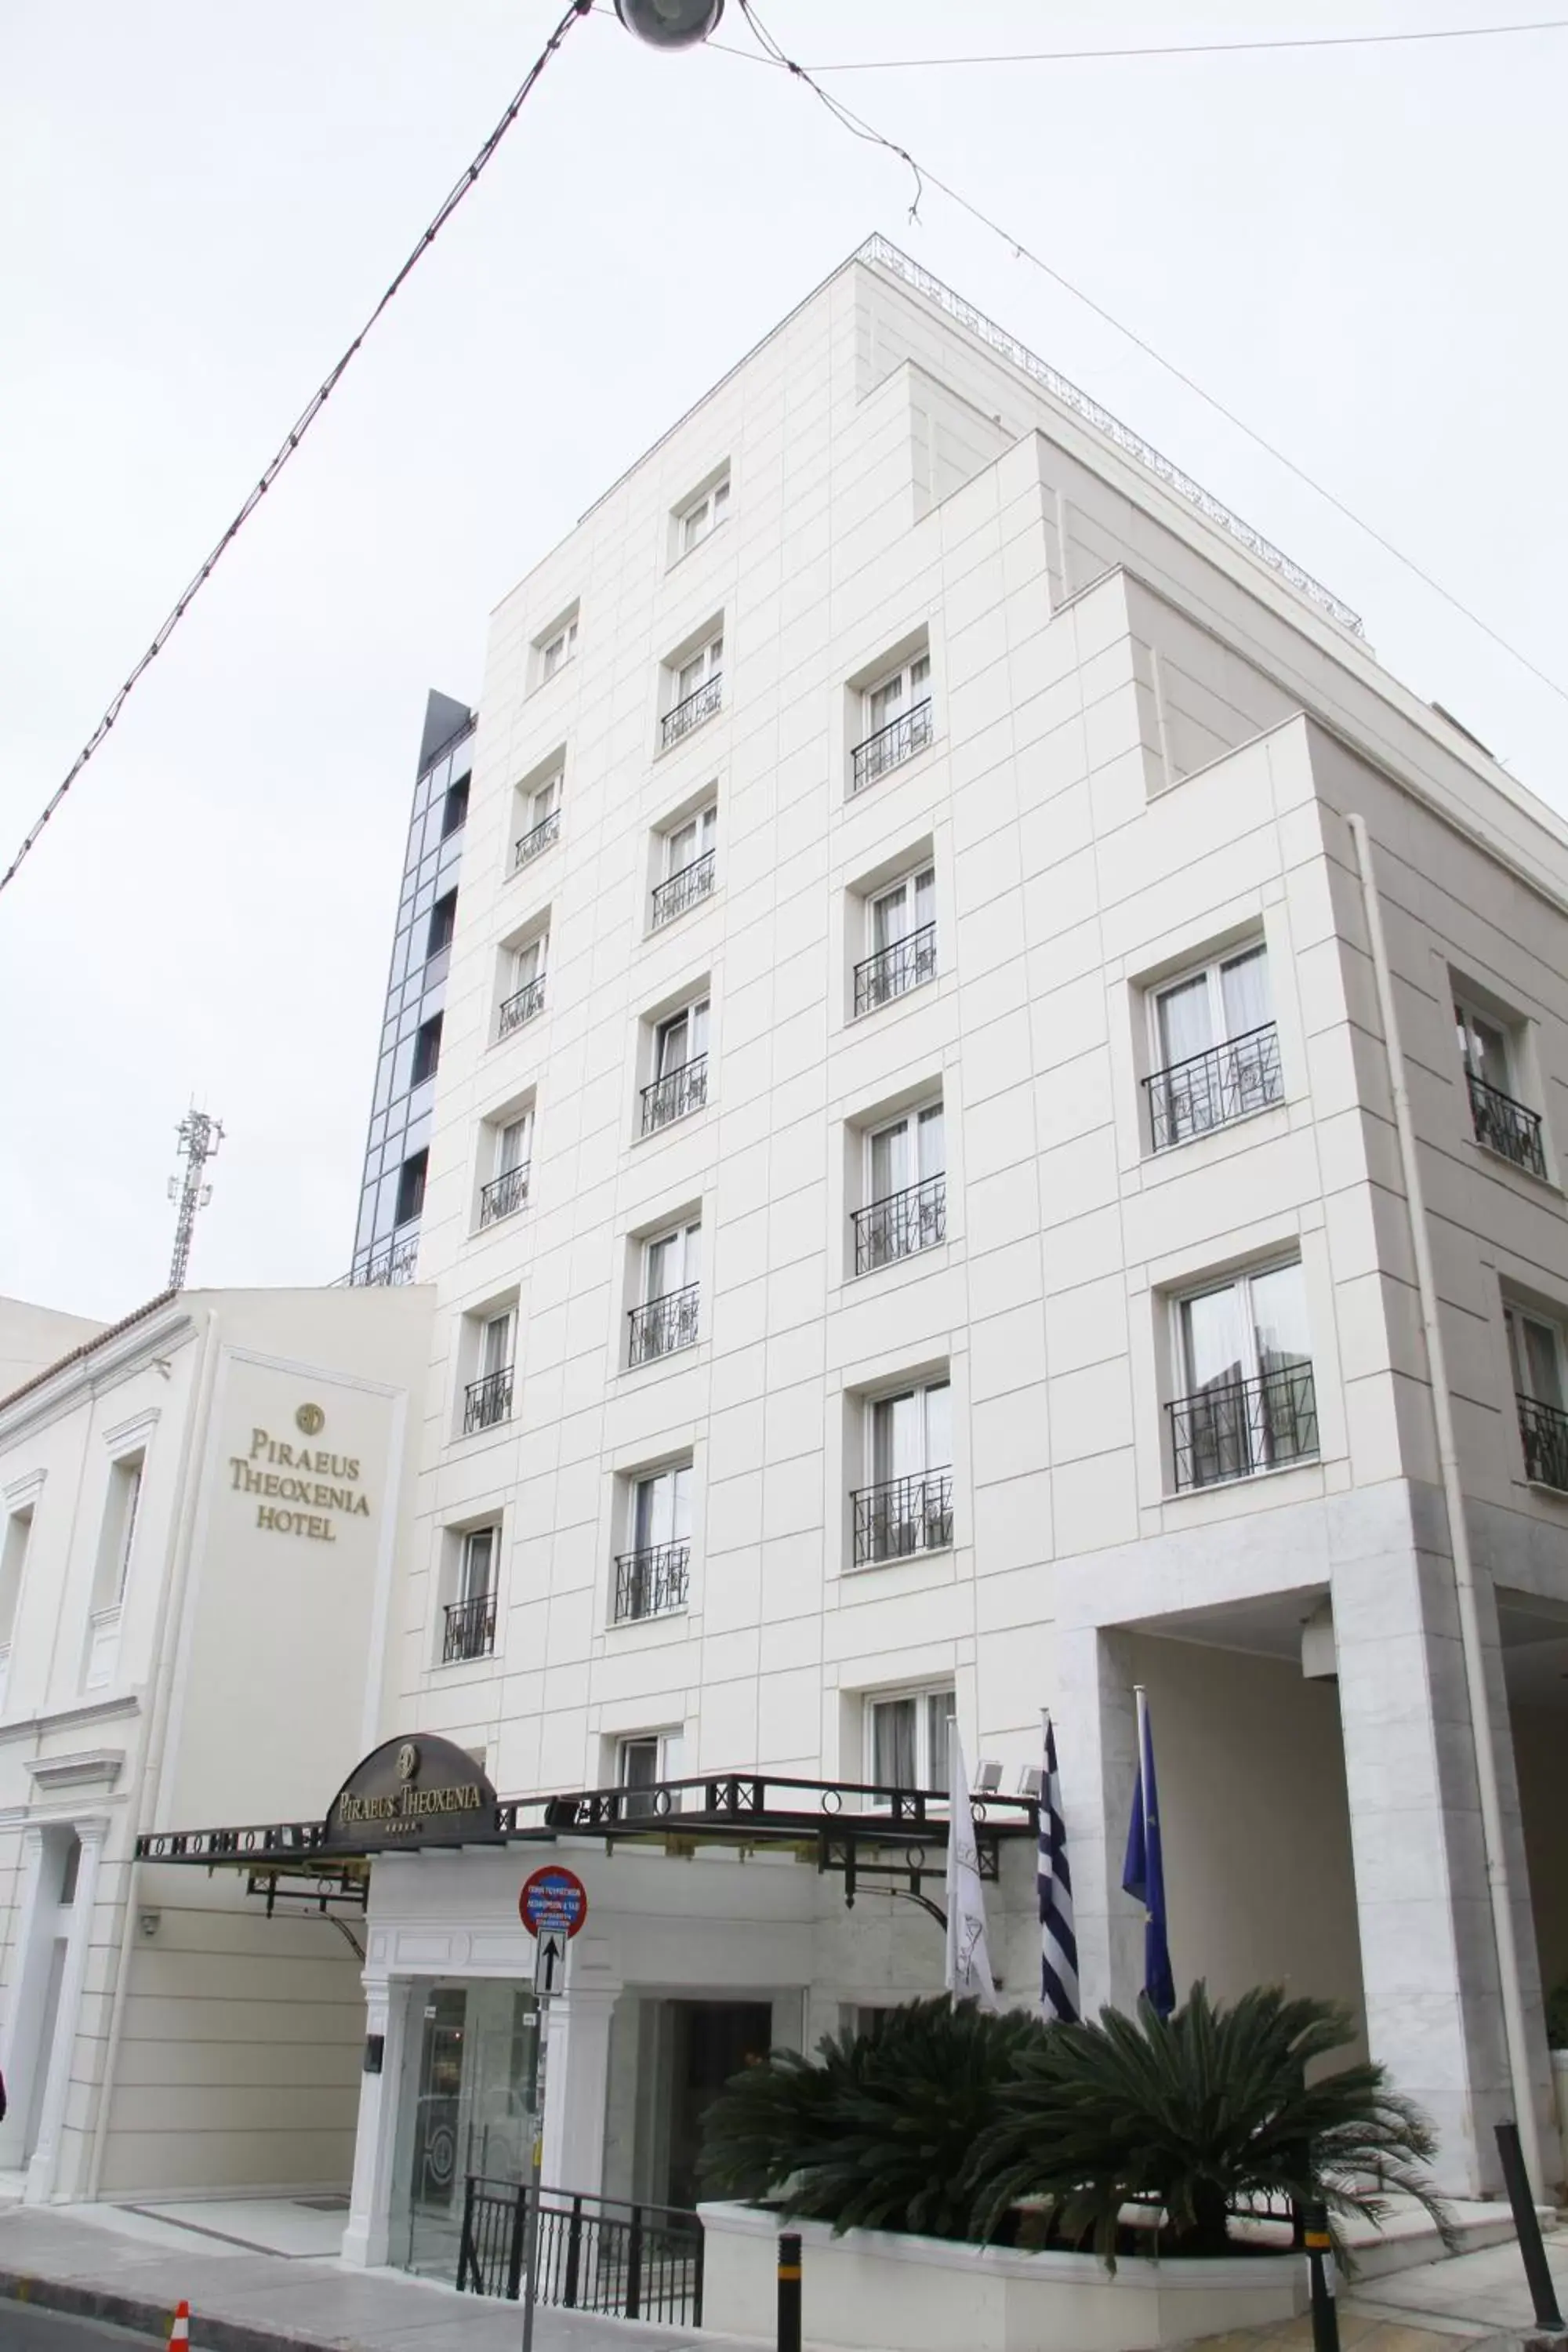 Facade/entrance, Property Building in Piraeus Theoxenia Hotel